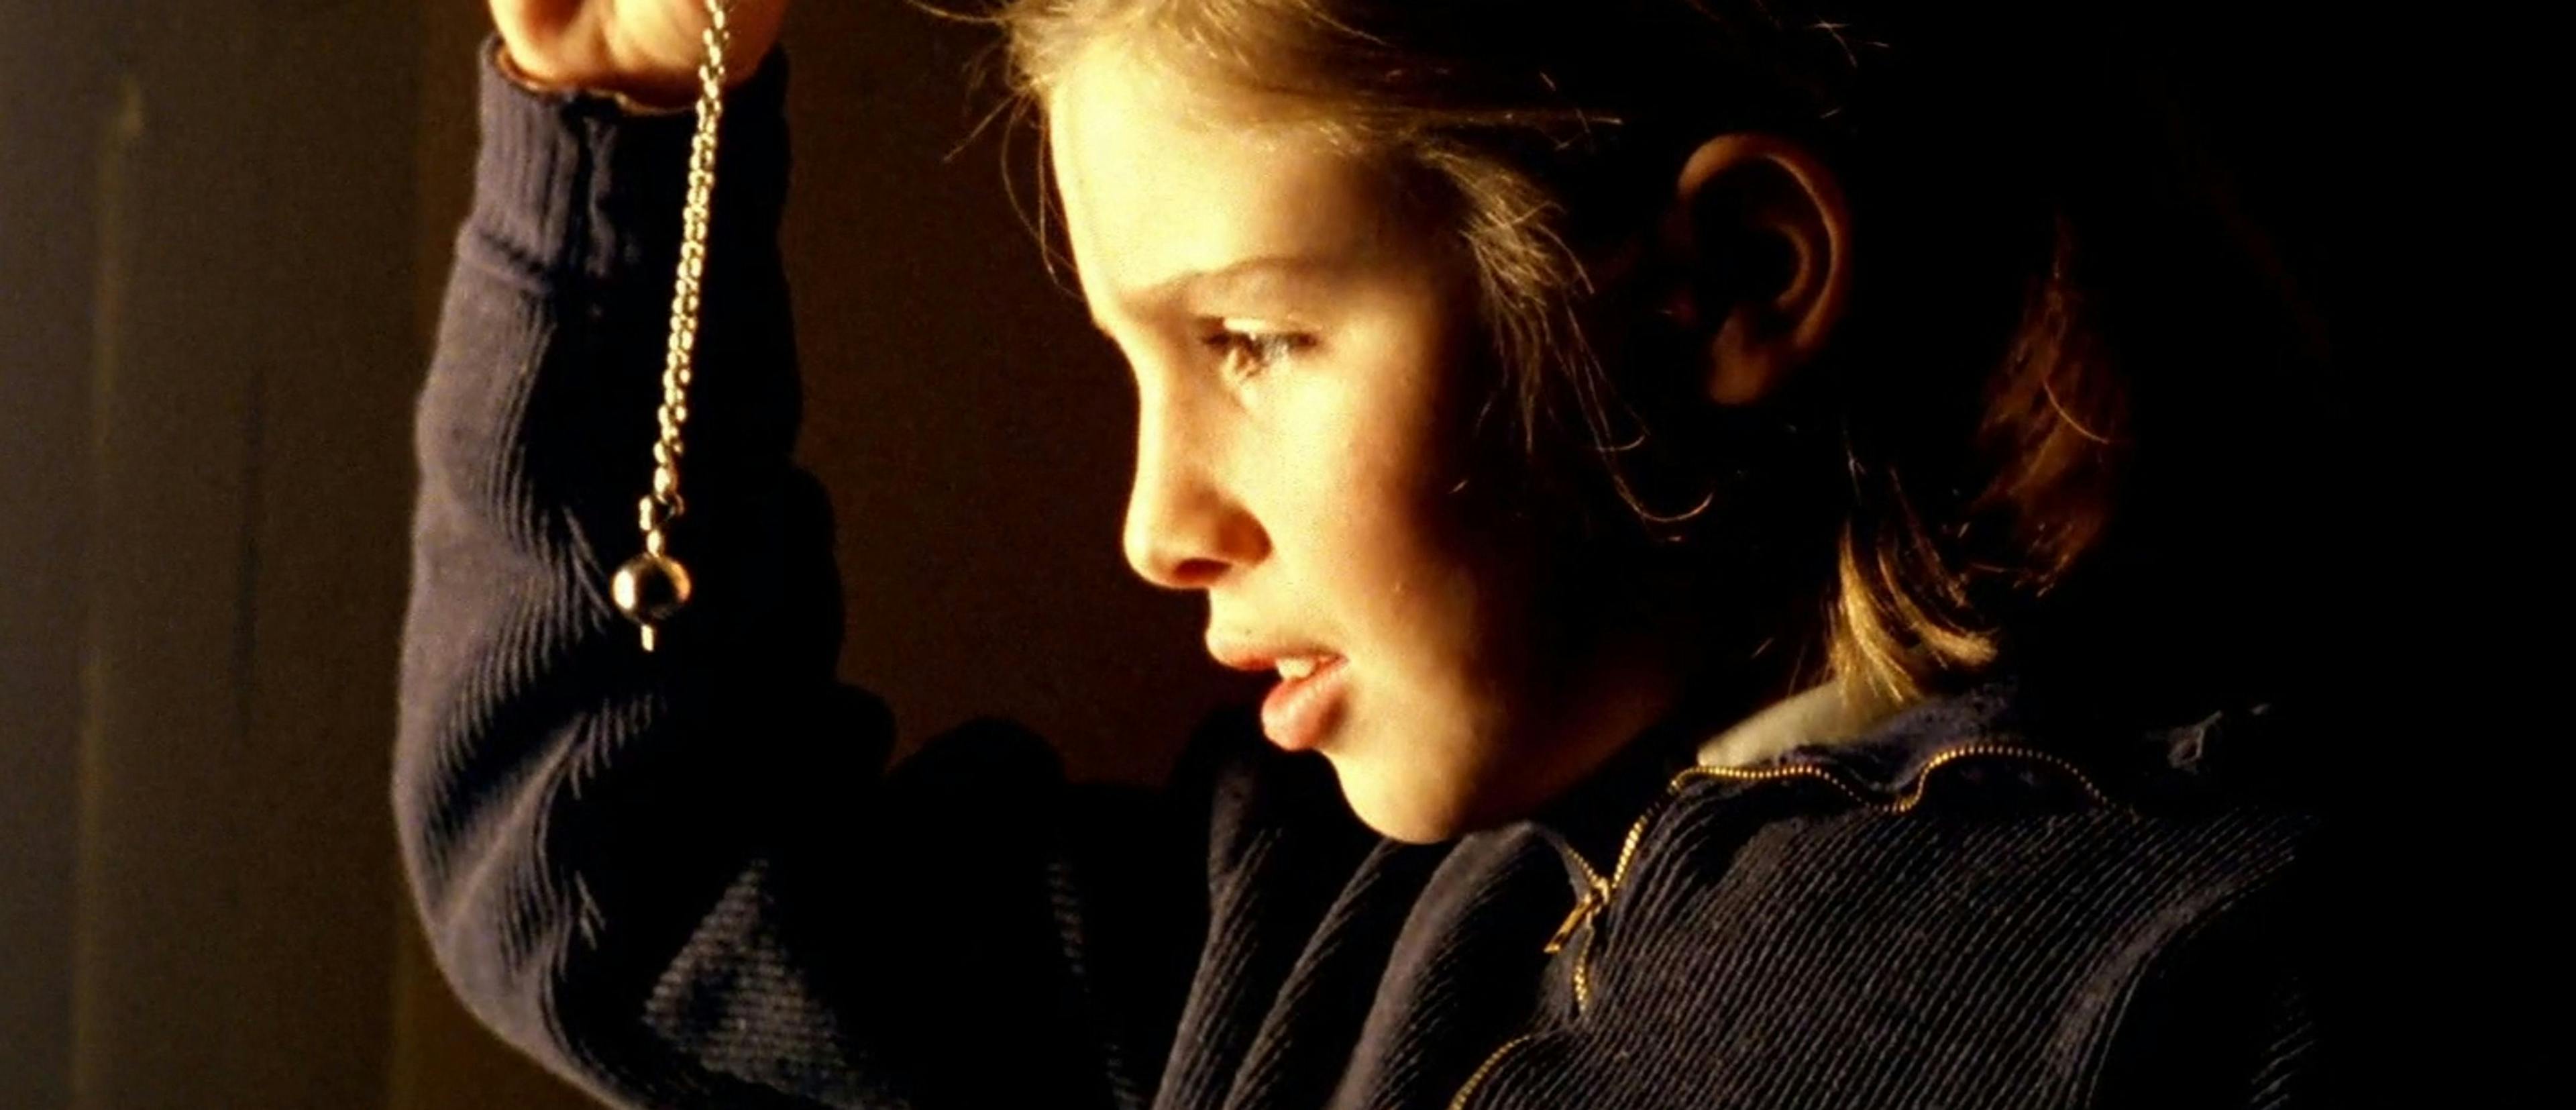 La actriz Sonsoles Aranguren, caracterizada como Estrella en un fotograma promocional de 'El sur'